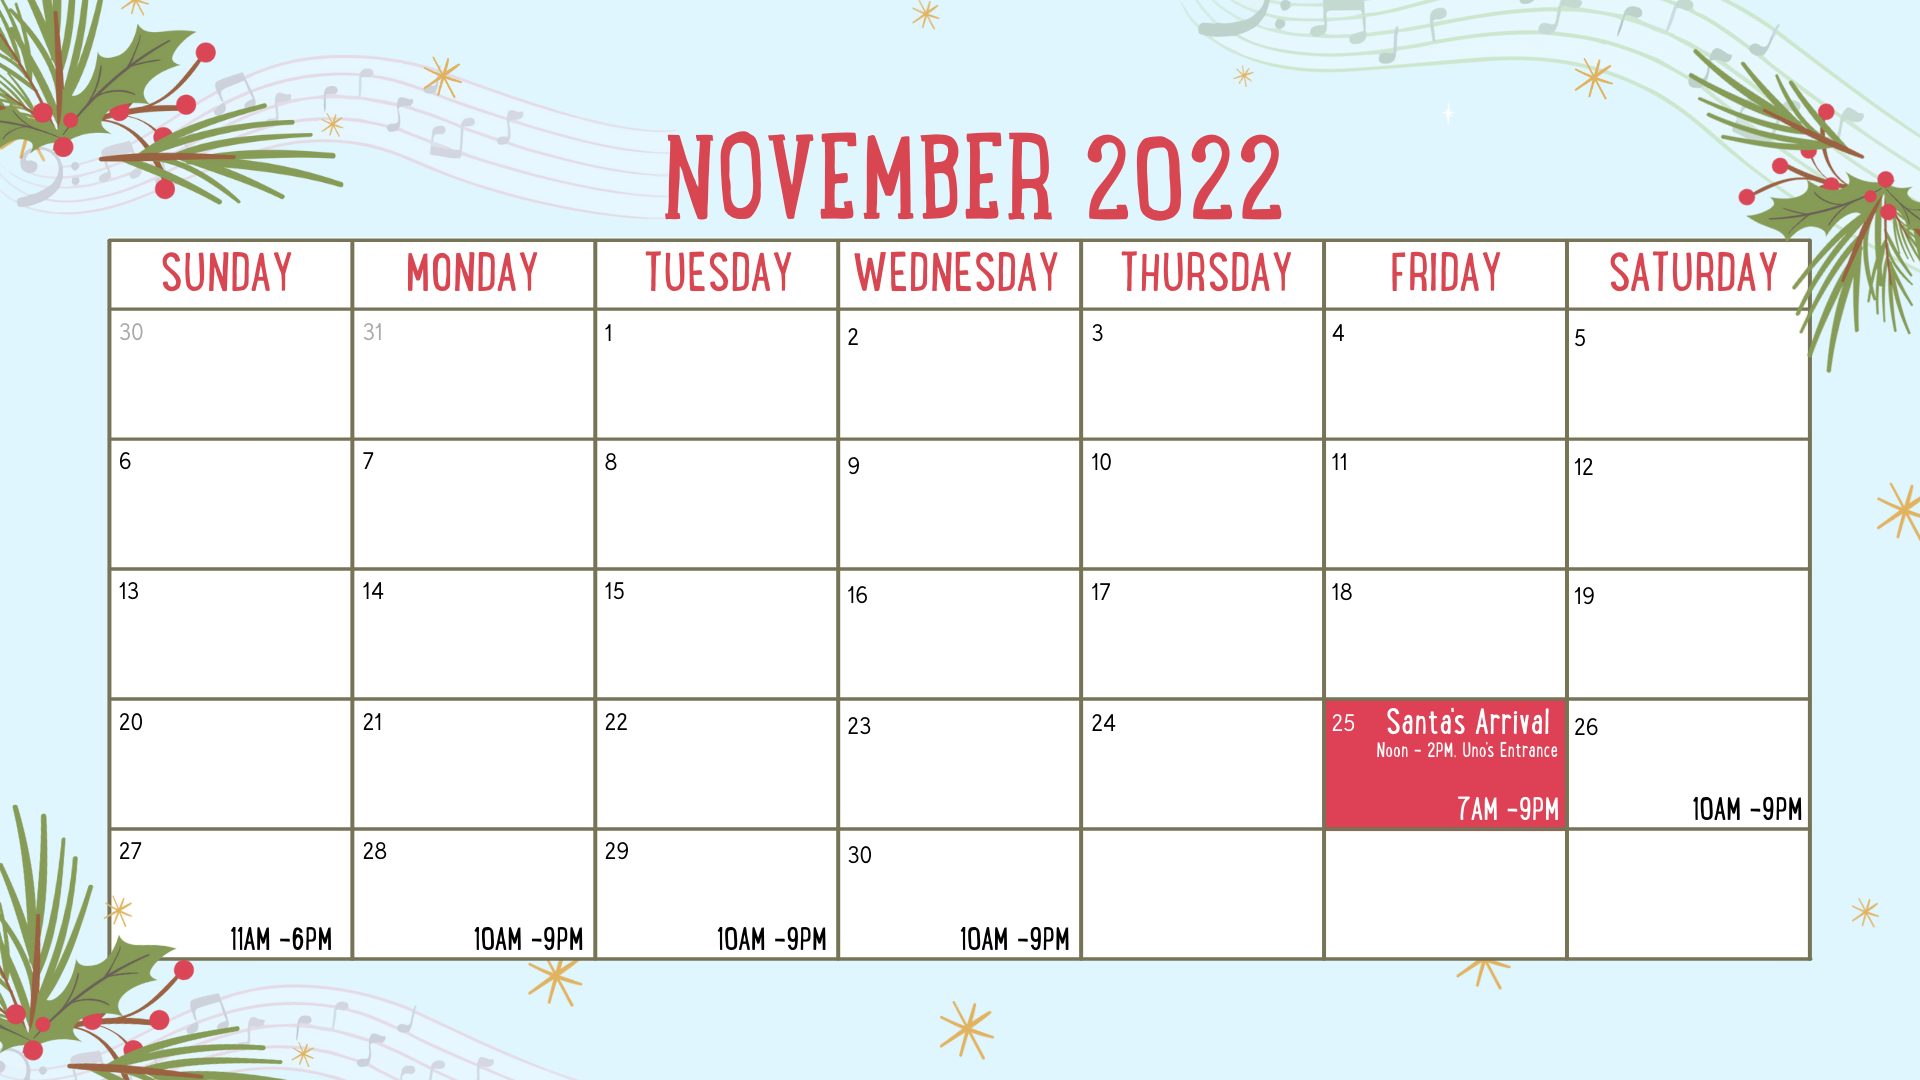 Holyoke Mall 2022 November Holiday Hours